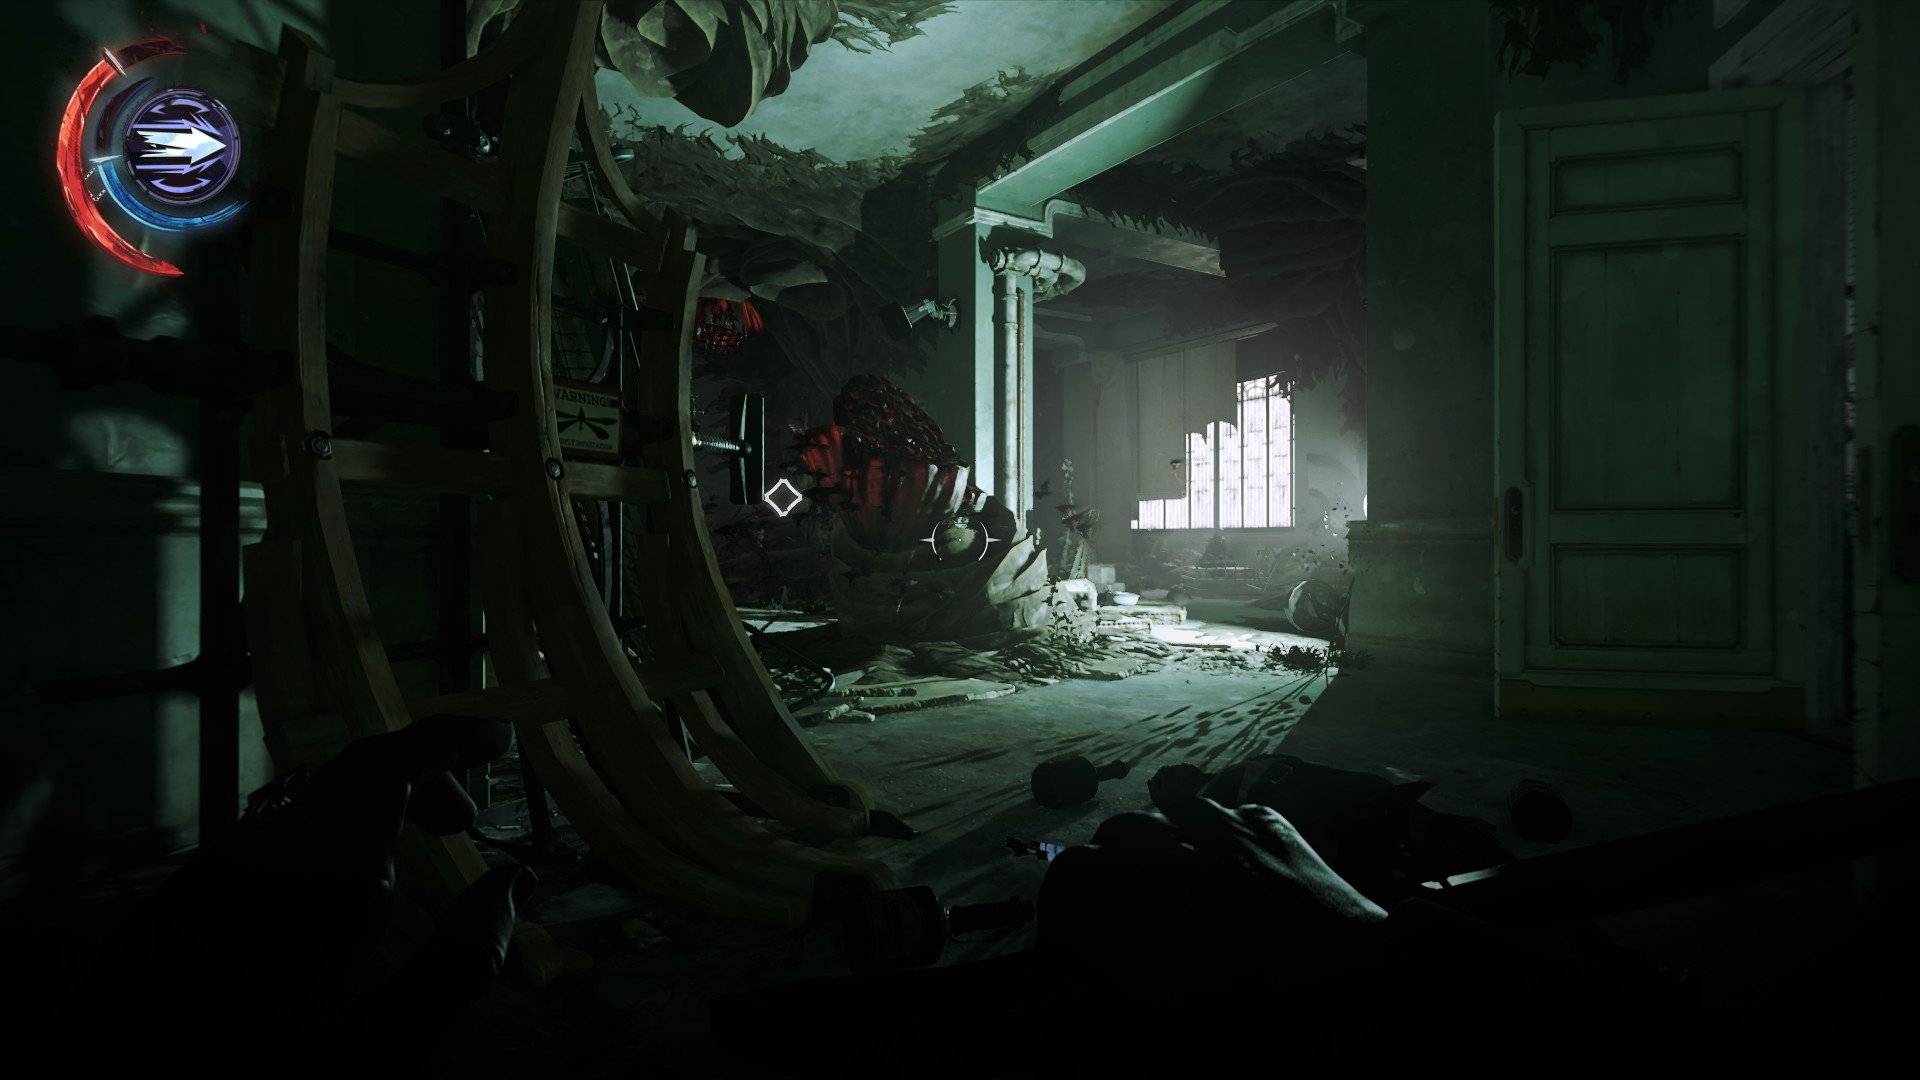 Dishonored 2 Screenshots - Image #19905